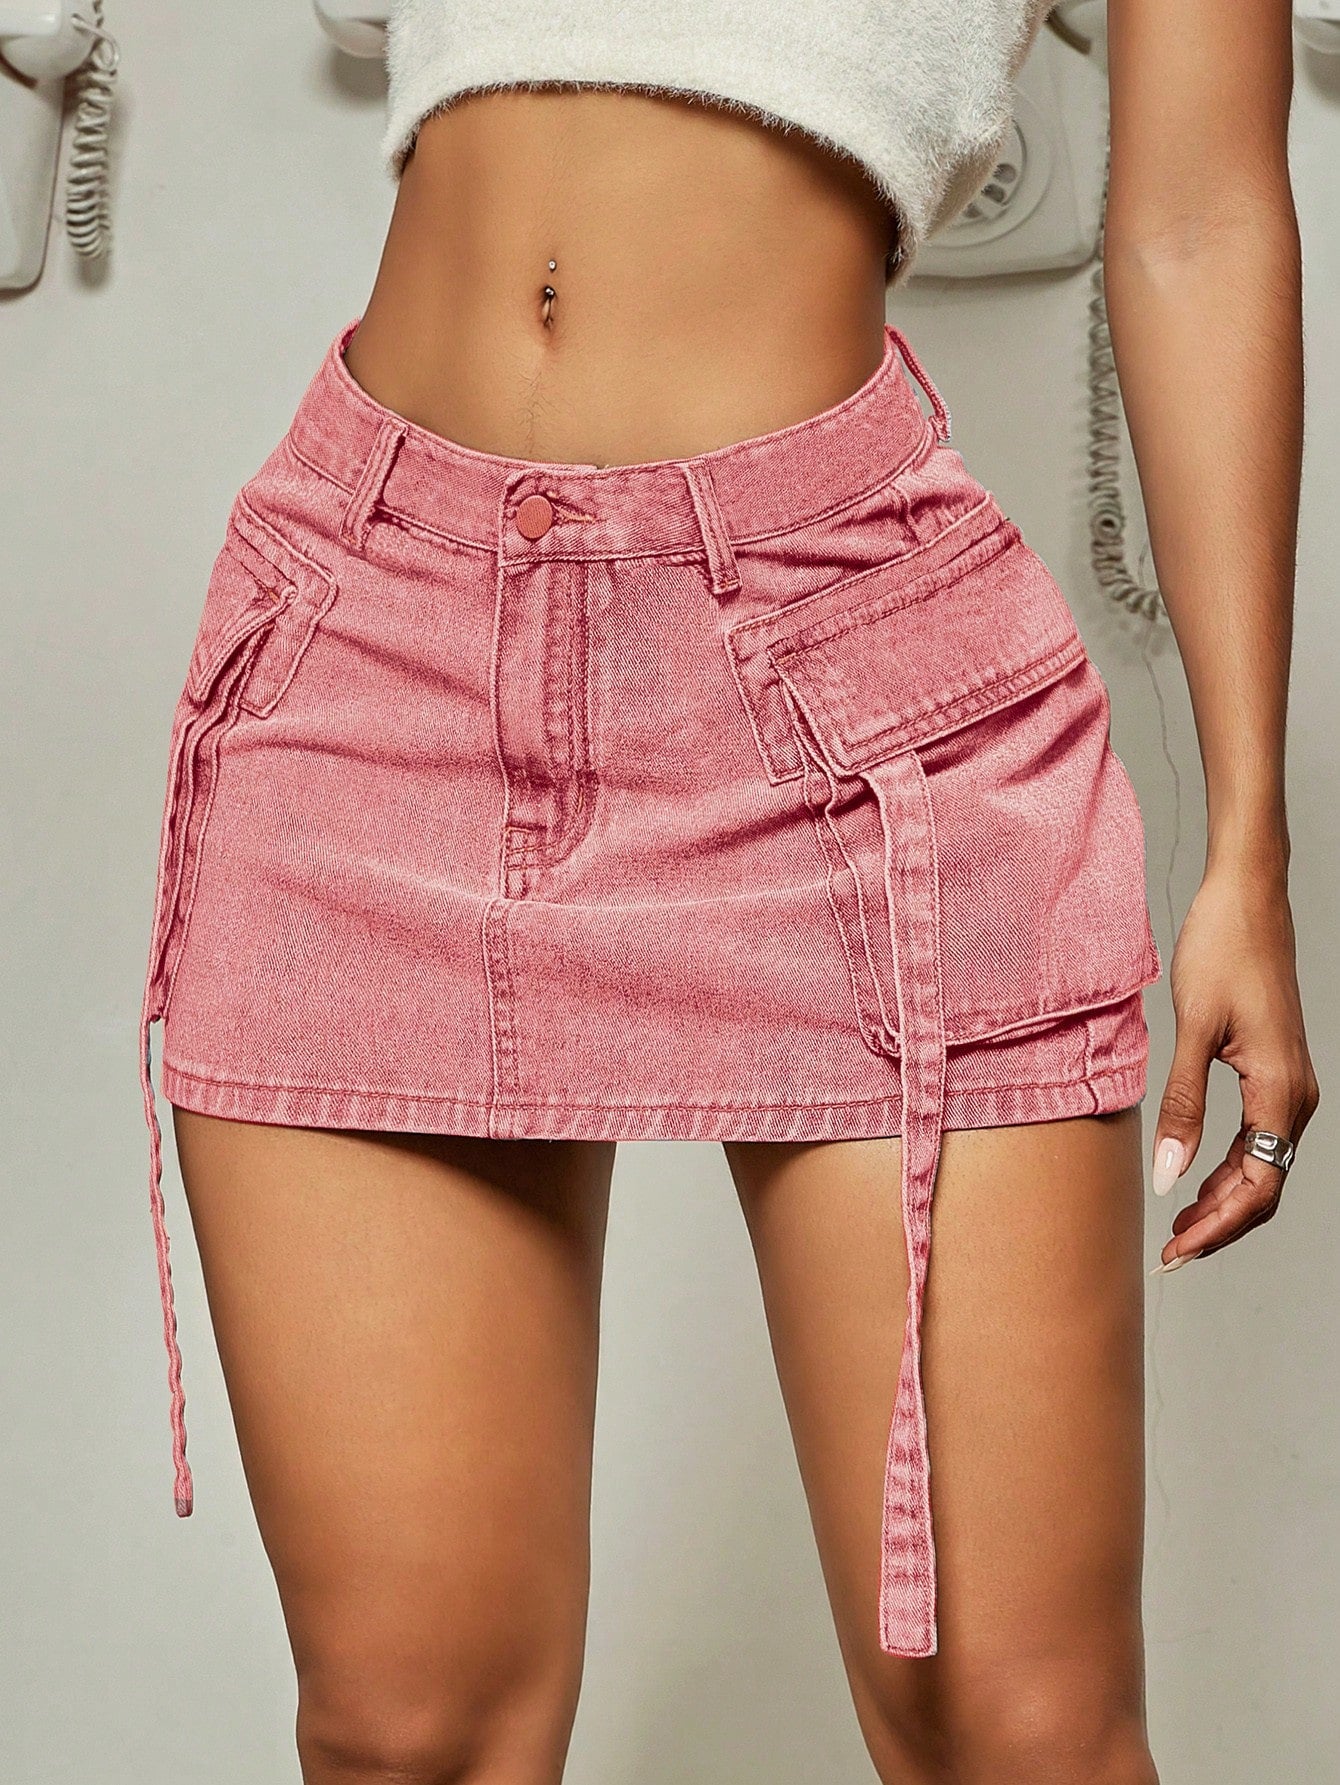 TEEK - Flap Pocket Ribbon Denim Mini Skirt SKIRT theteekdotcom pink XS 